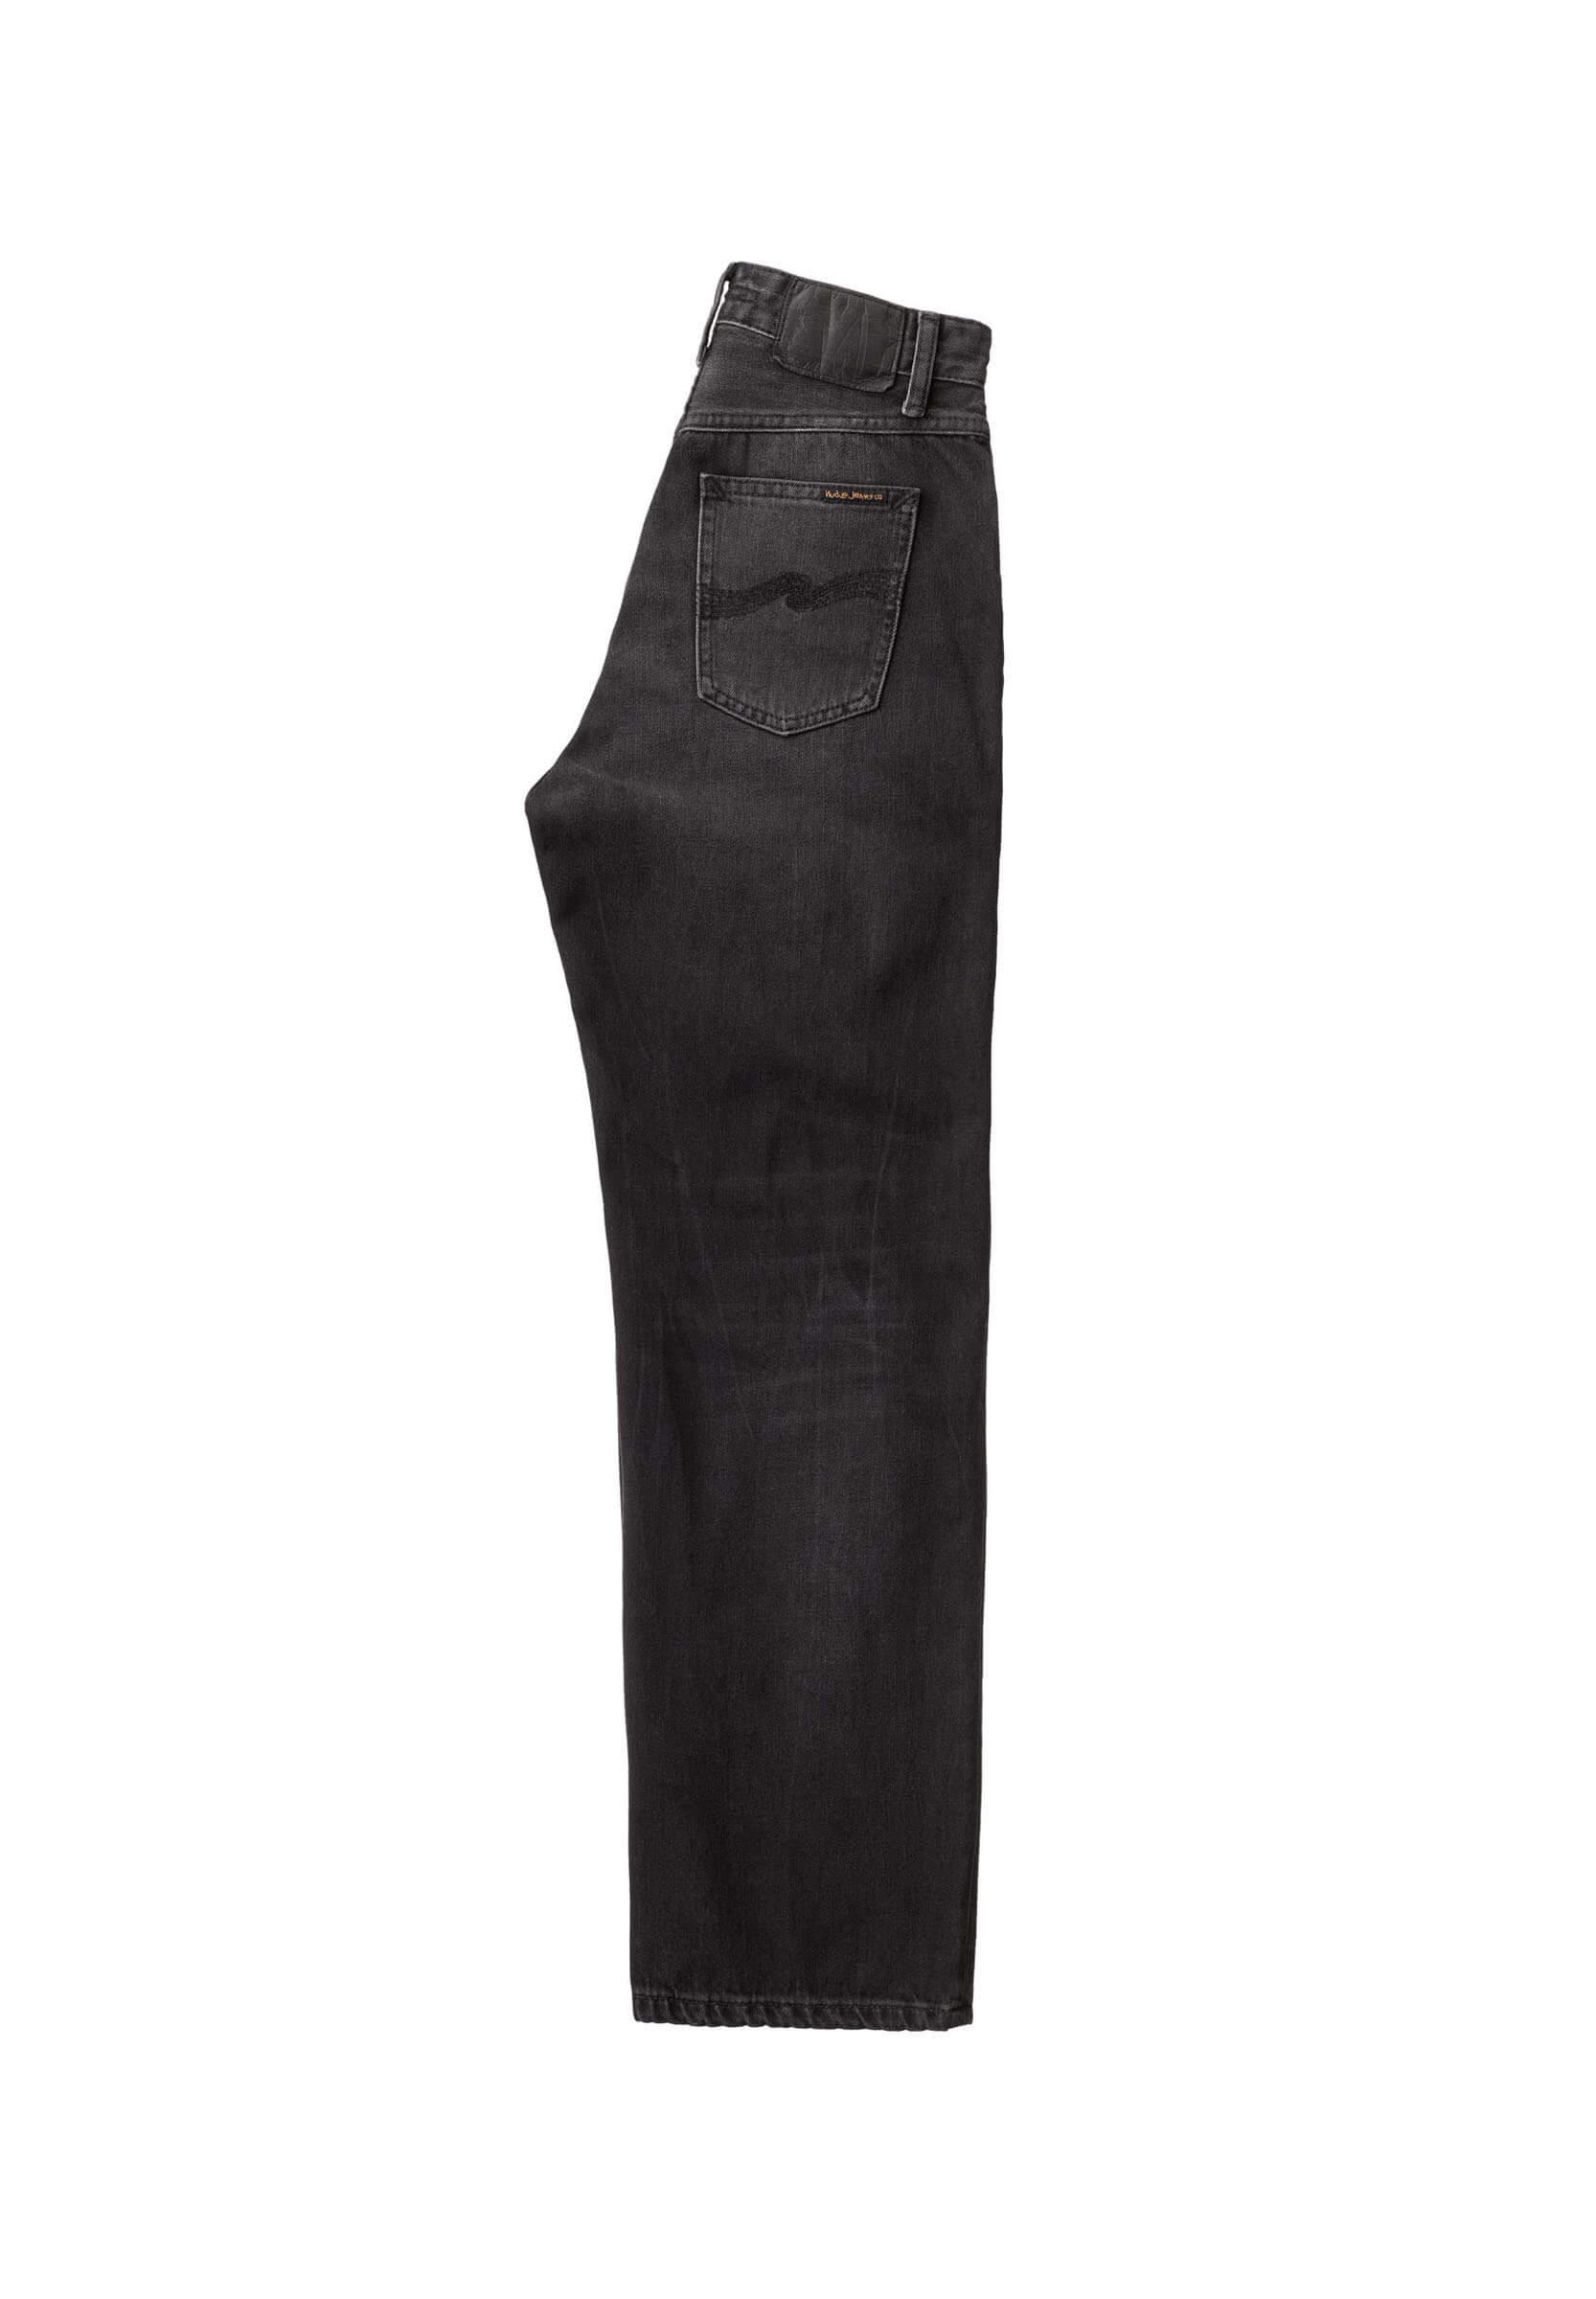 NUDIE JEANS Jeans Clean Eileen shimmering black 26/28